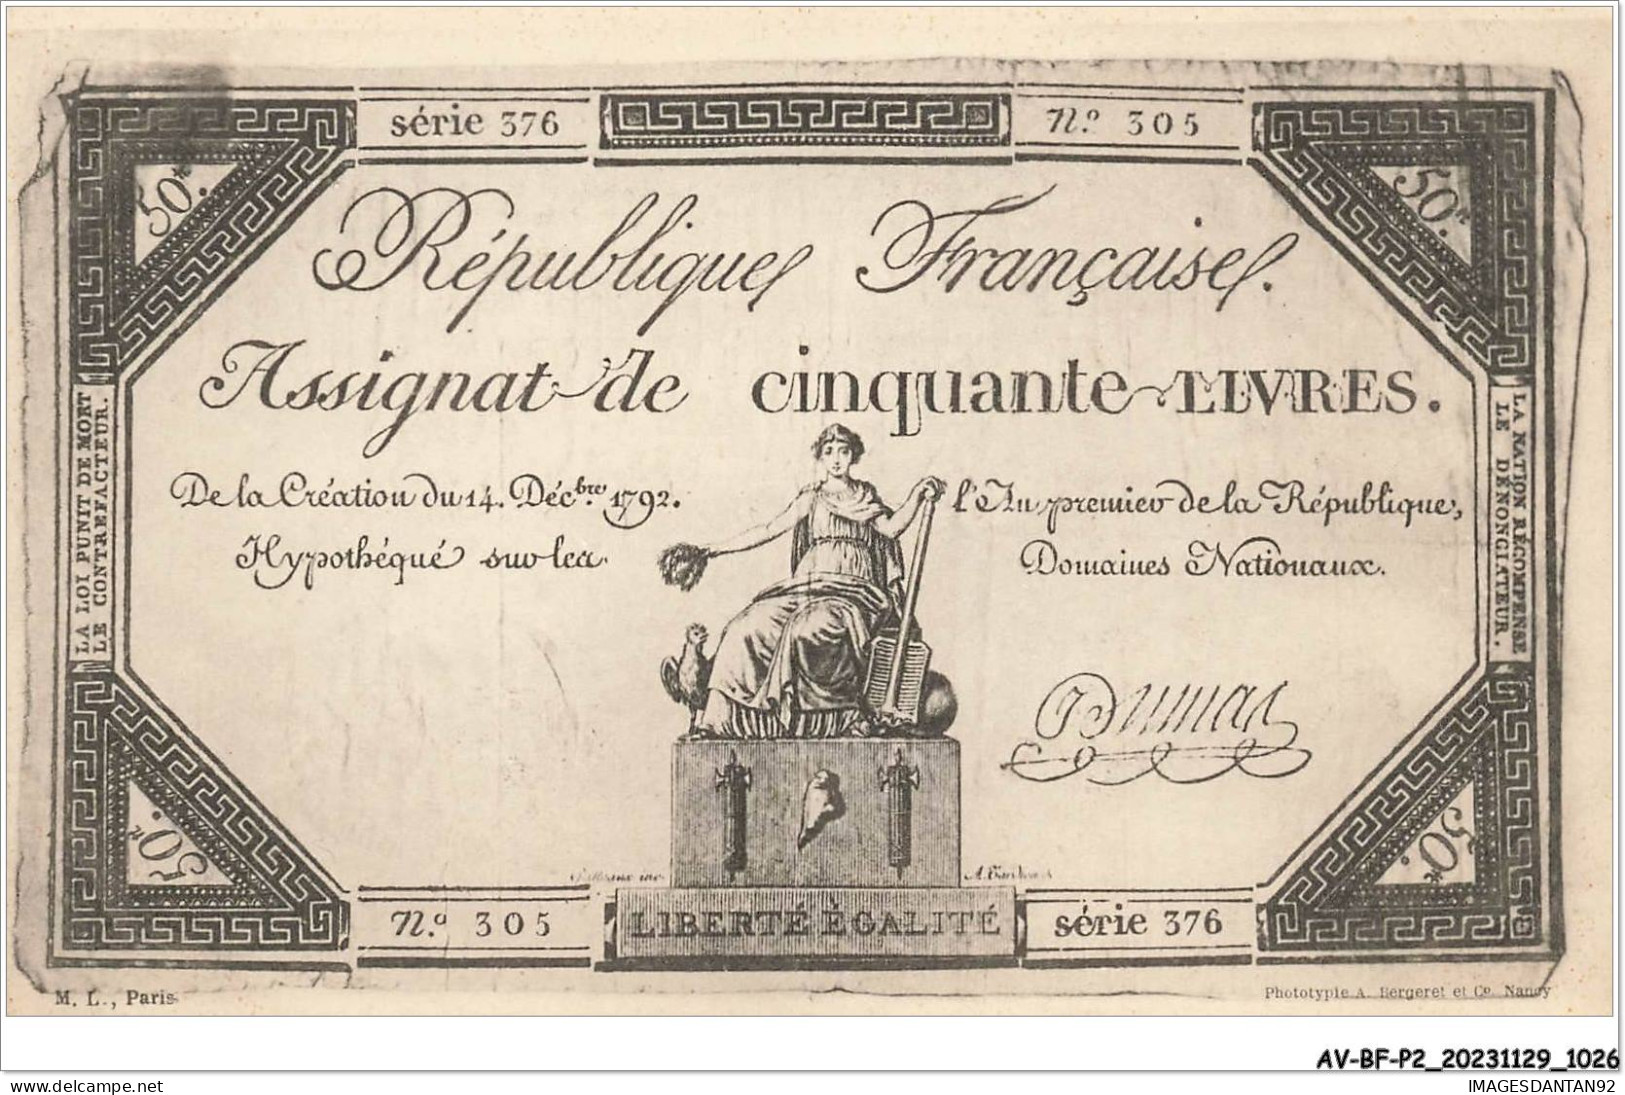 AV-BFP2-0700 - MONNAIE - Billet - République Française - Assignat De Cinquante Livres - Monnaies (représentations)